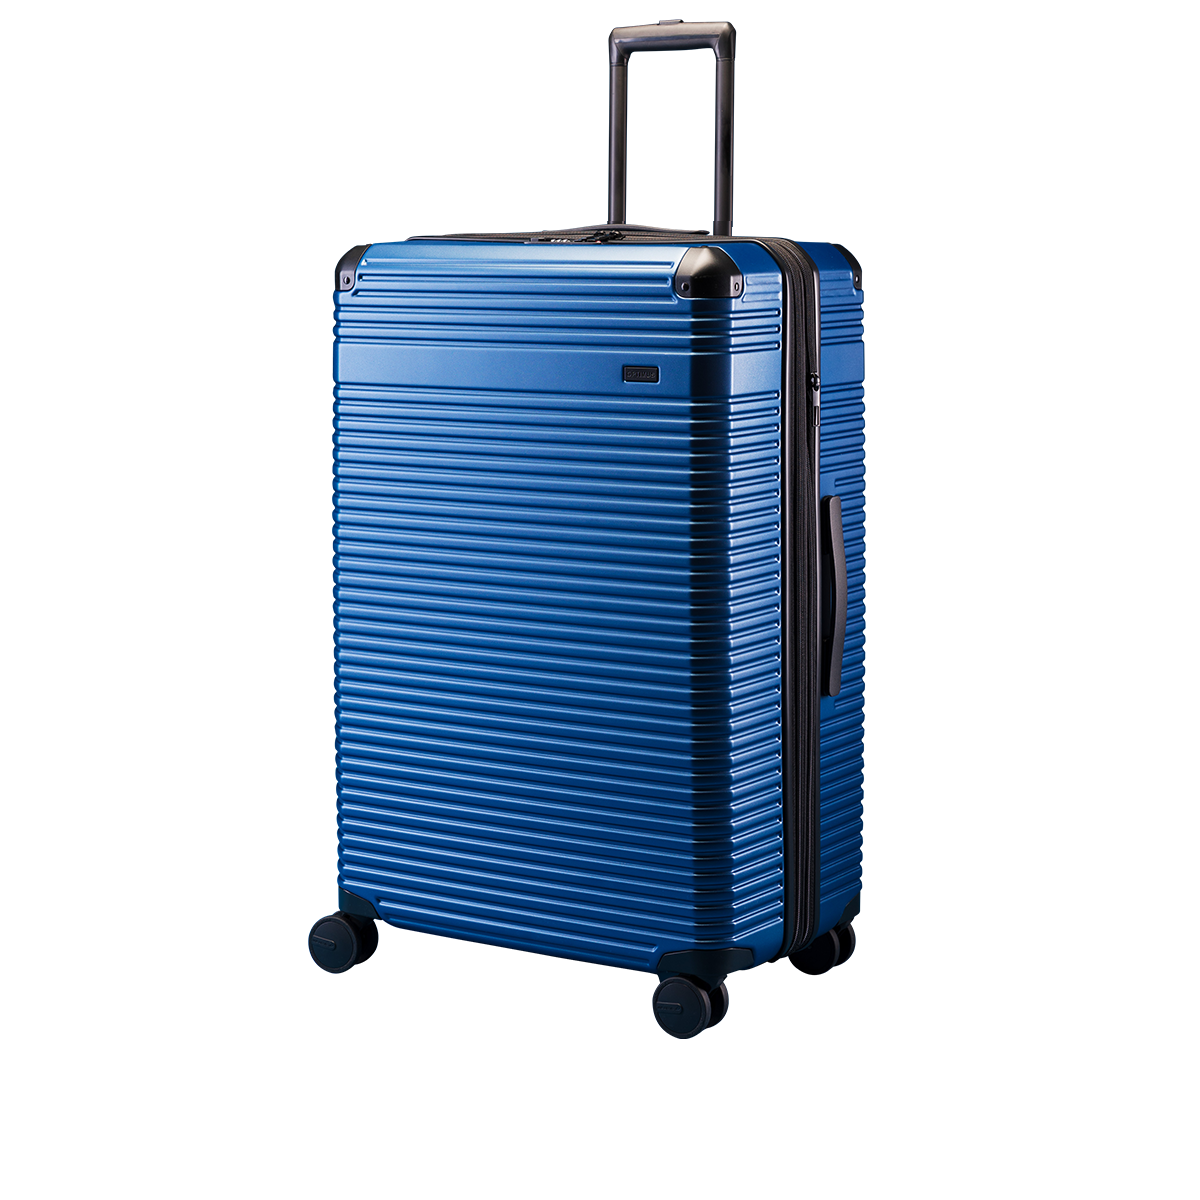 Optimus Luggage – Premium Luggage at Revolutionary Prices